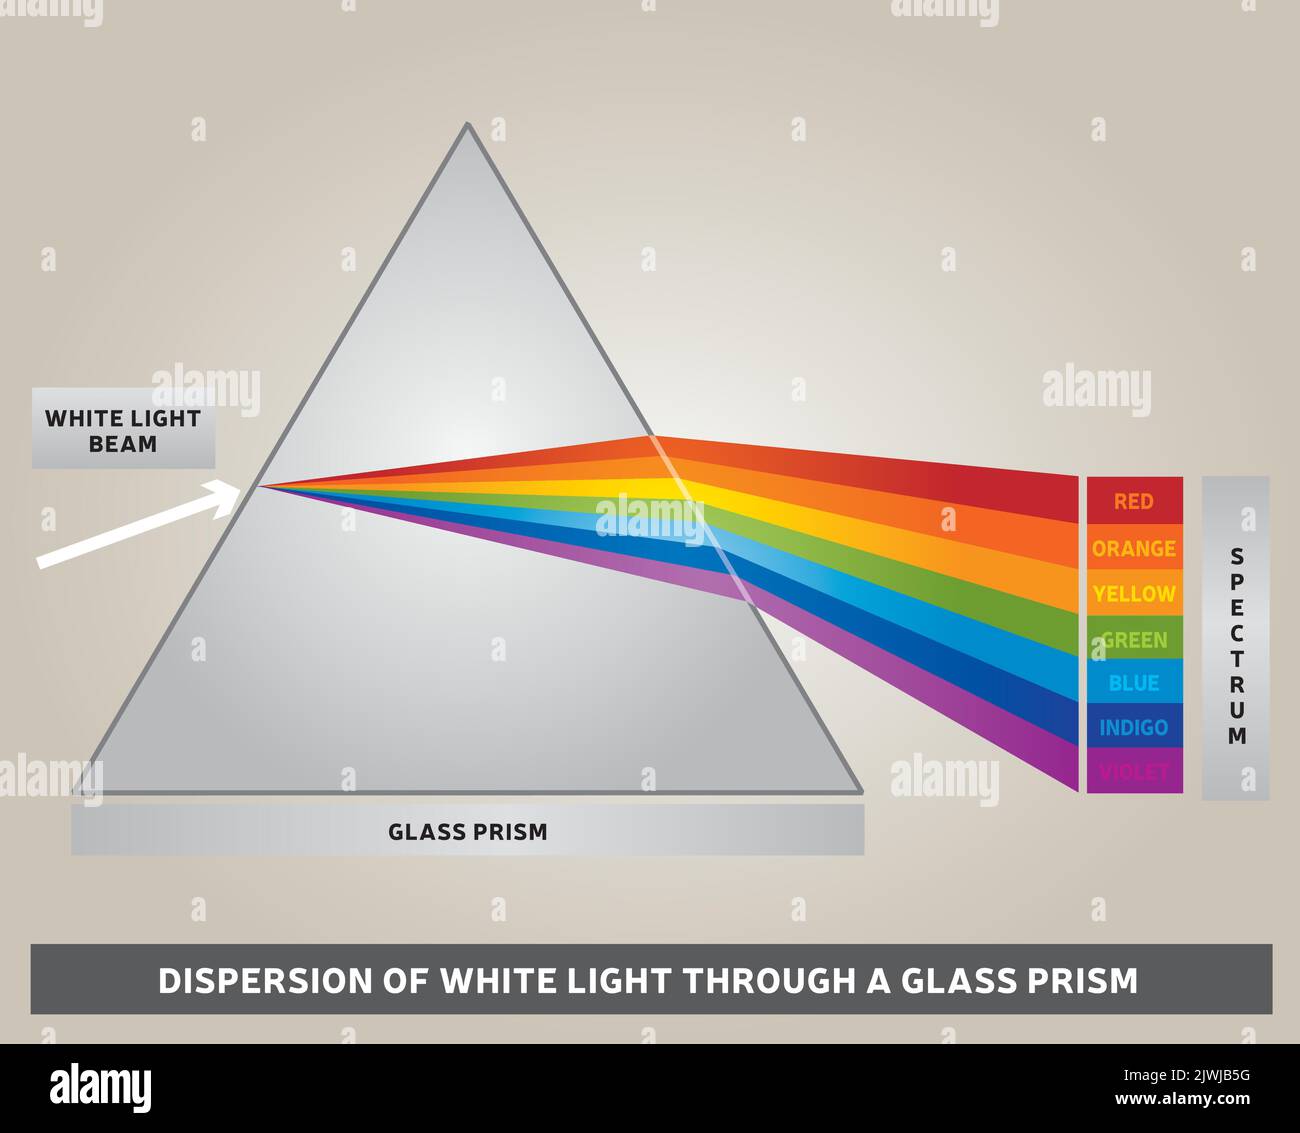 Dispersione della luce bianca attraverso un prisma di vetro - diagramma - vettore - colori arcobaleno - raggi di luce Illustrazione Vettoriale